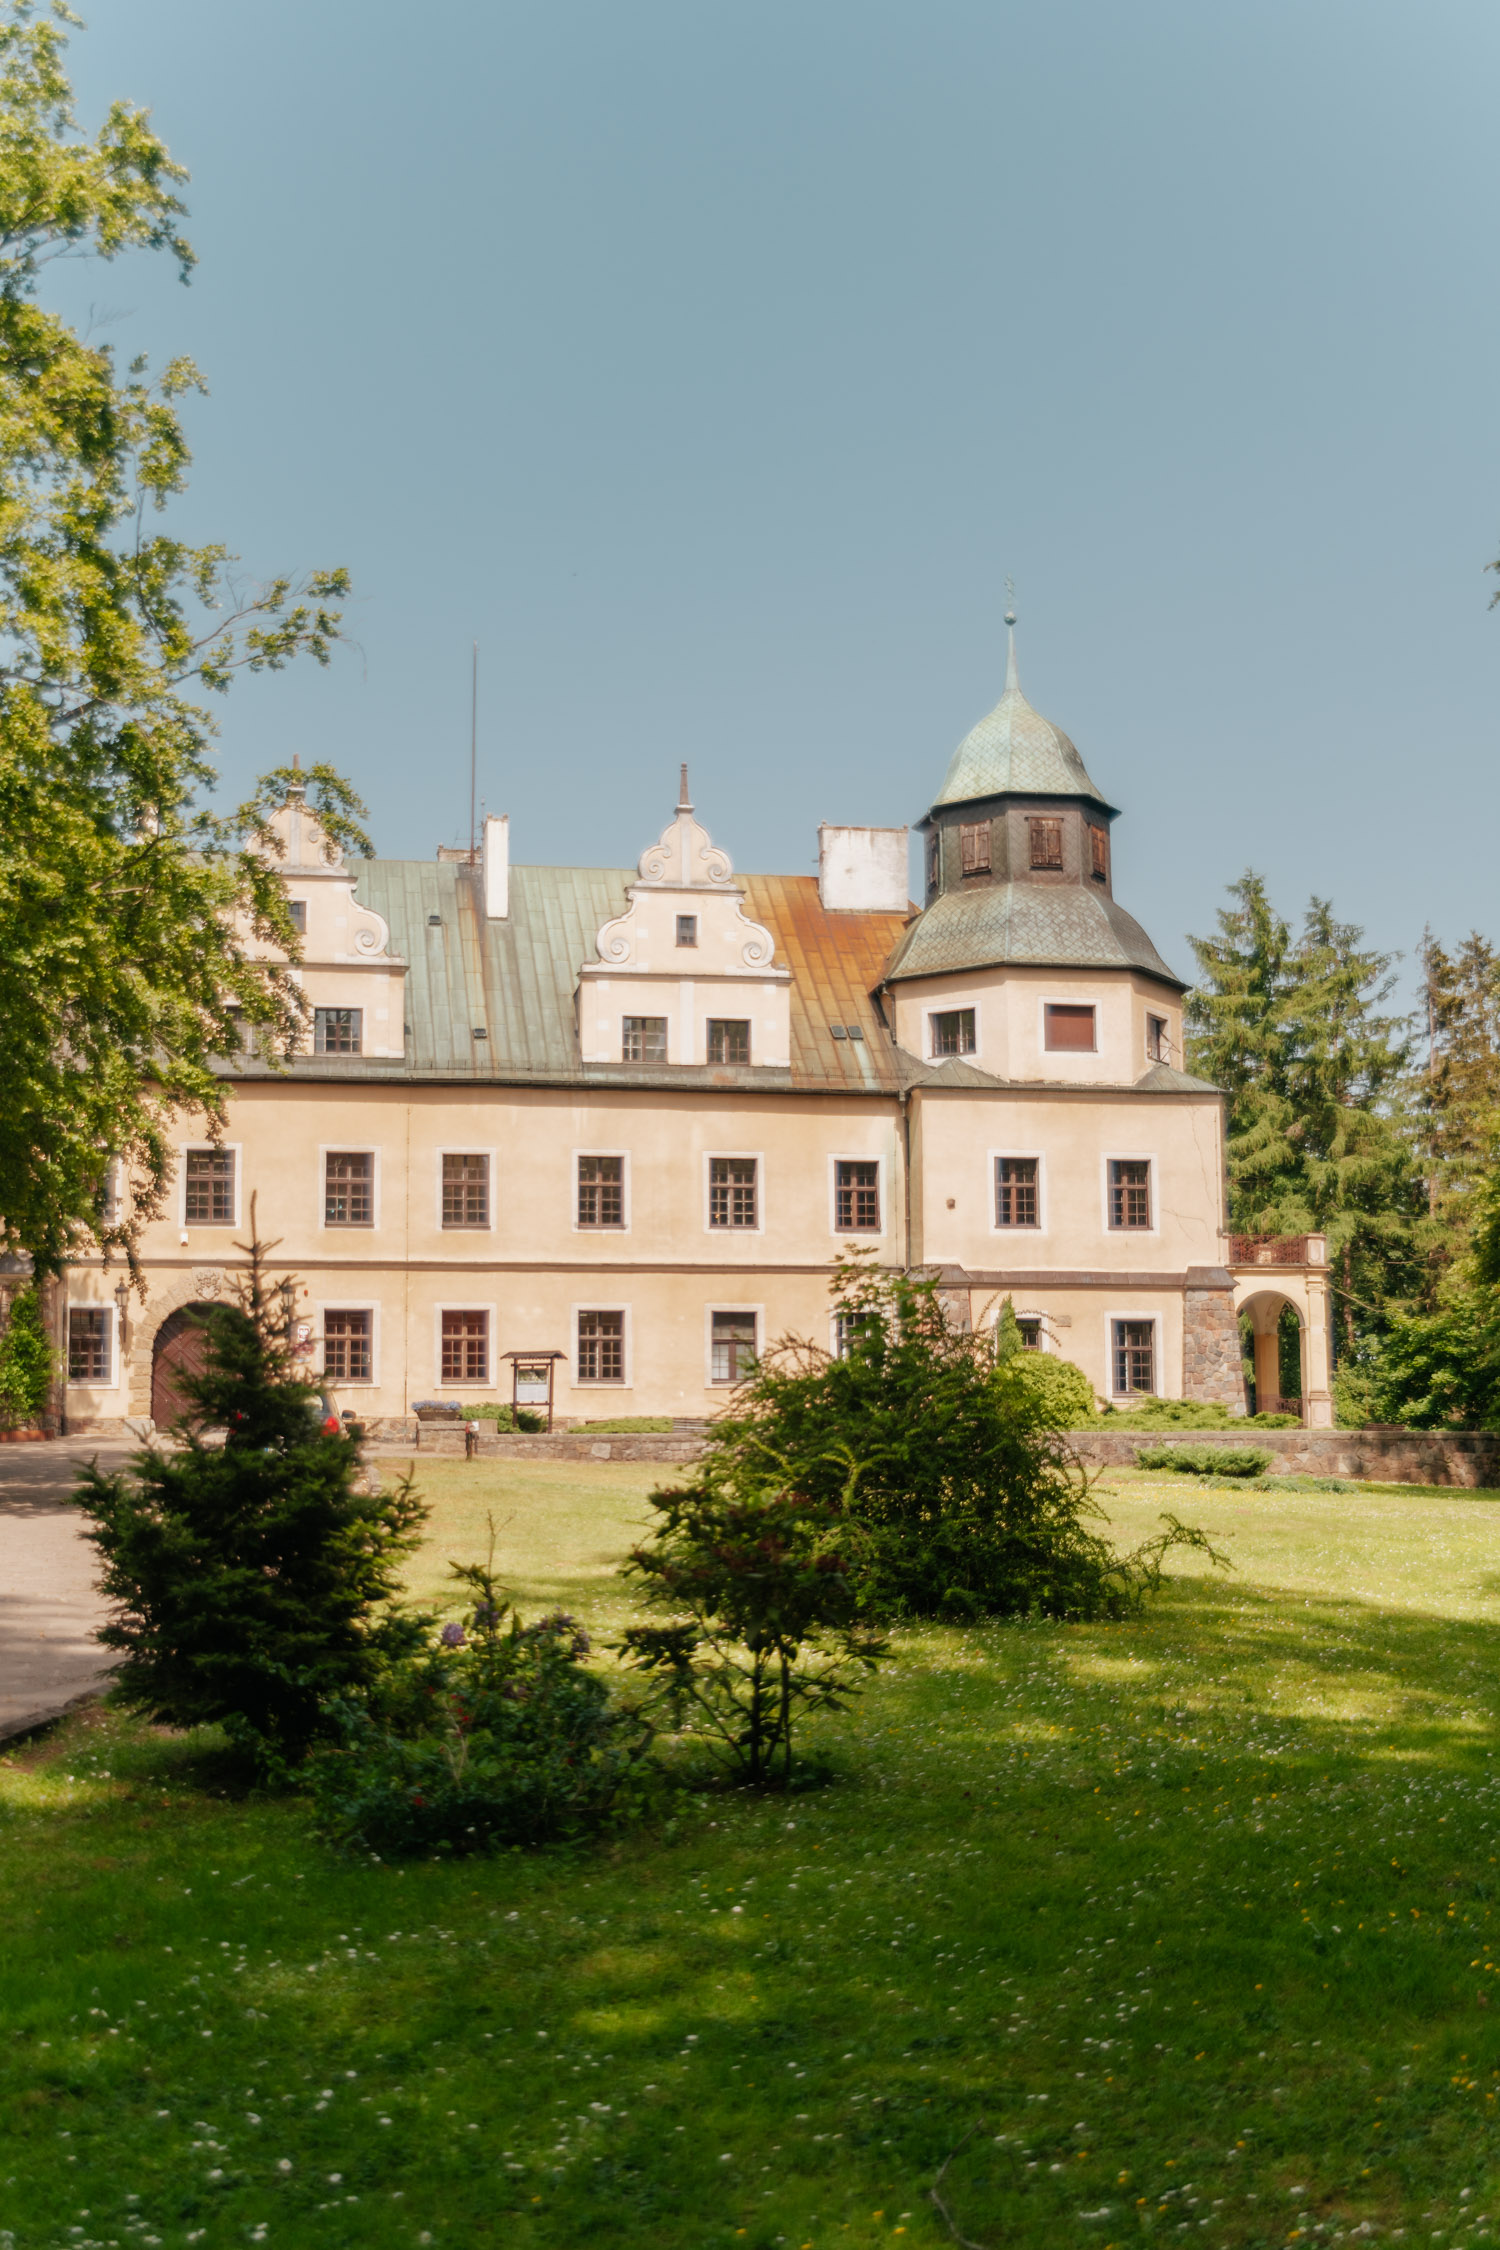 Castle Zamek w Goraju, near Czarnkow.
